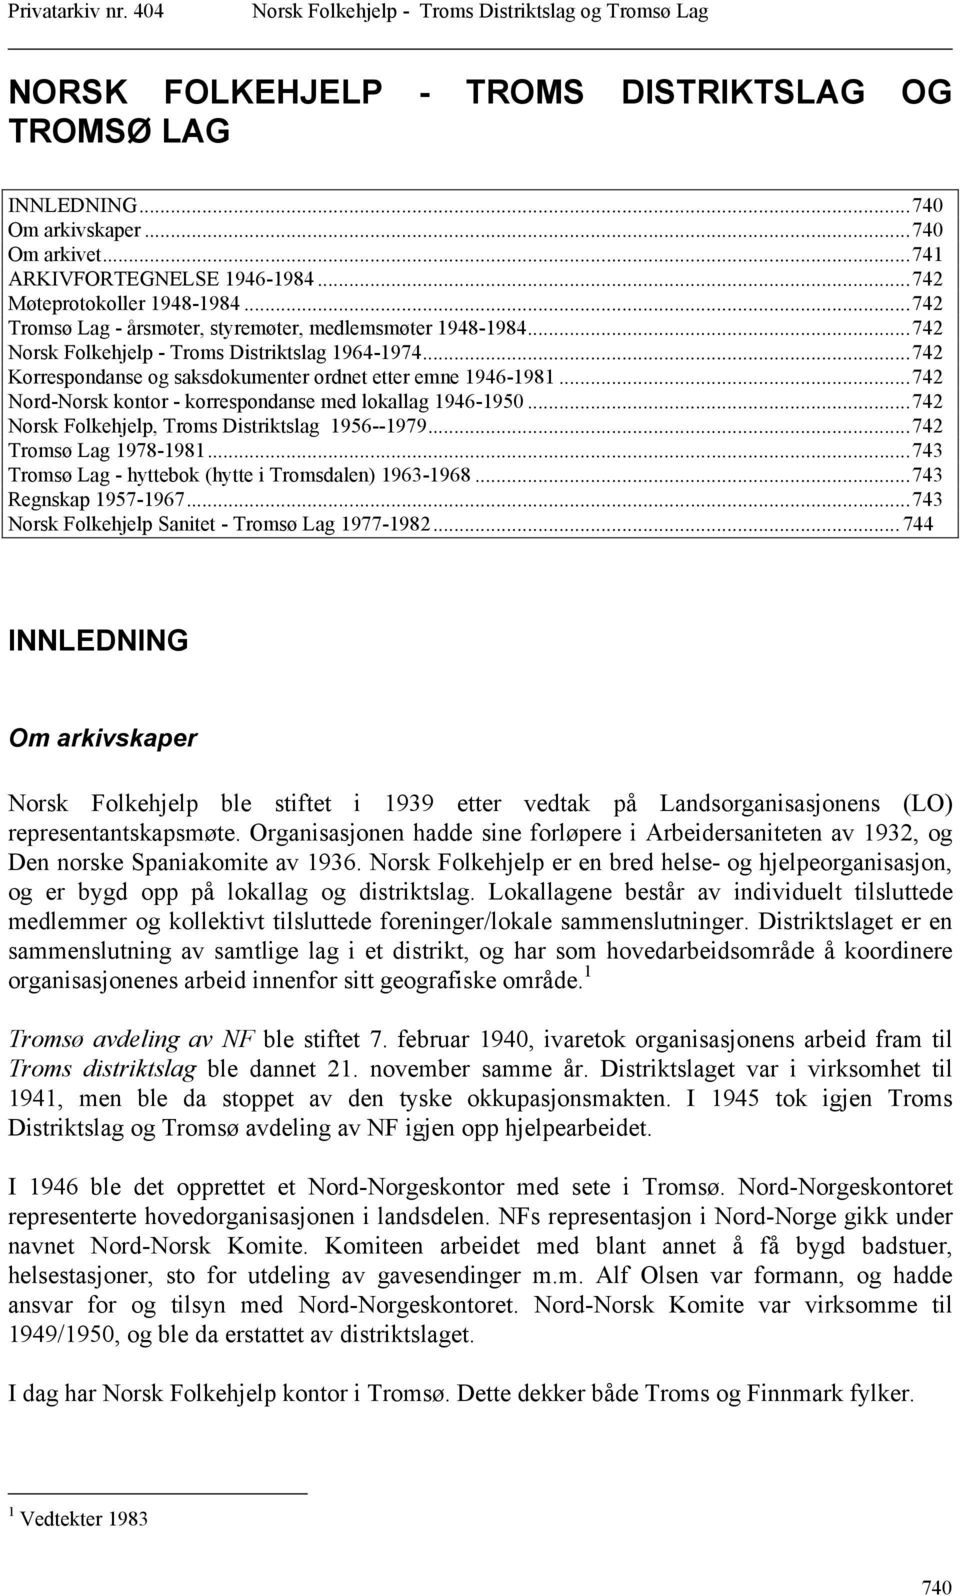 ..742 Nord-Norsk kontor - korrespondanse med lokallag 1946-1950...742 Norsk Folkehjelp, Troms Distriktslag 1956--1979...742 Tromsø Lag 1978-1981.